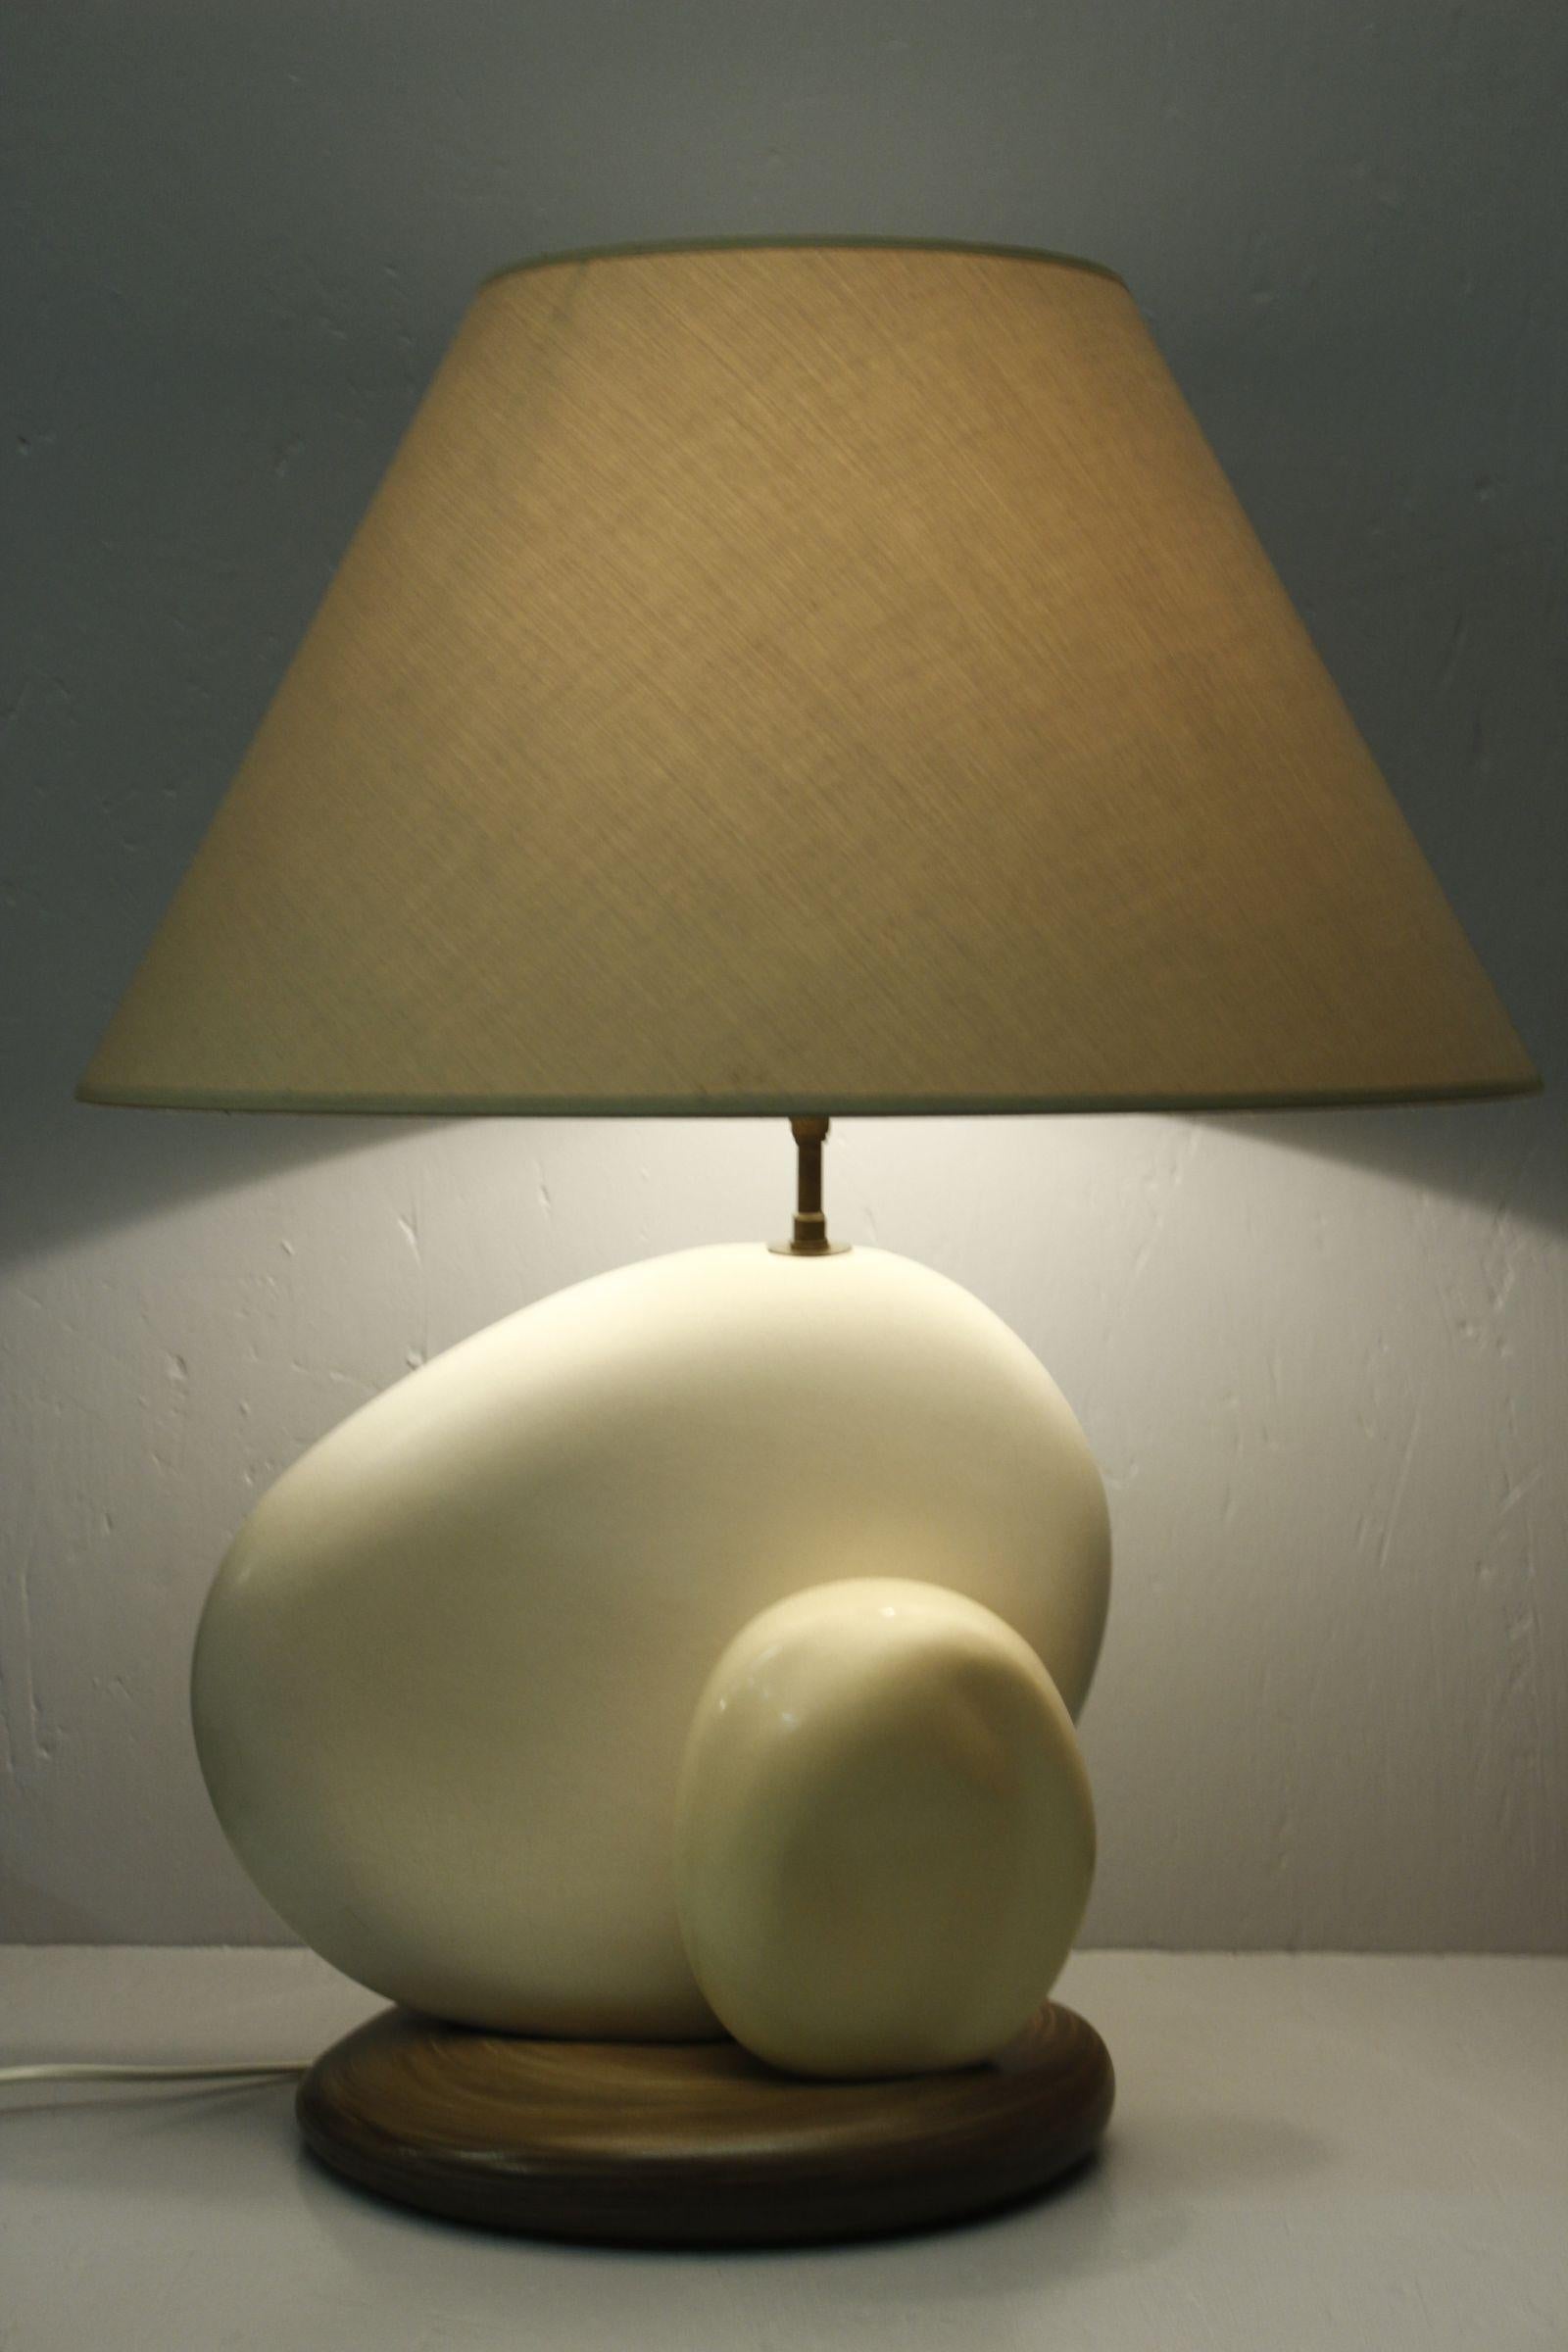 Große Kieselstein-Keramiklampe des französischen Designers und Lampenherstellers François Chatain, um 1980. 

In zartem Weiß und brauner Emaille, mit originellem Schirm, der dank eines Drehpunkts unter der Glühbirnenfassung geneigt werden kann. So